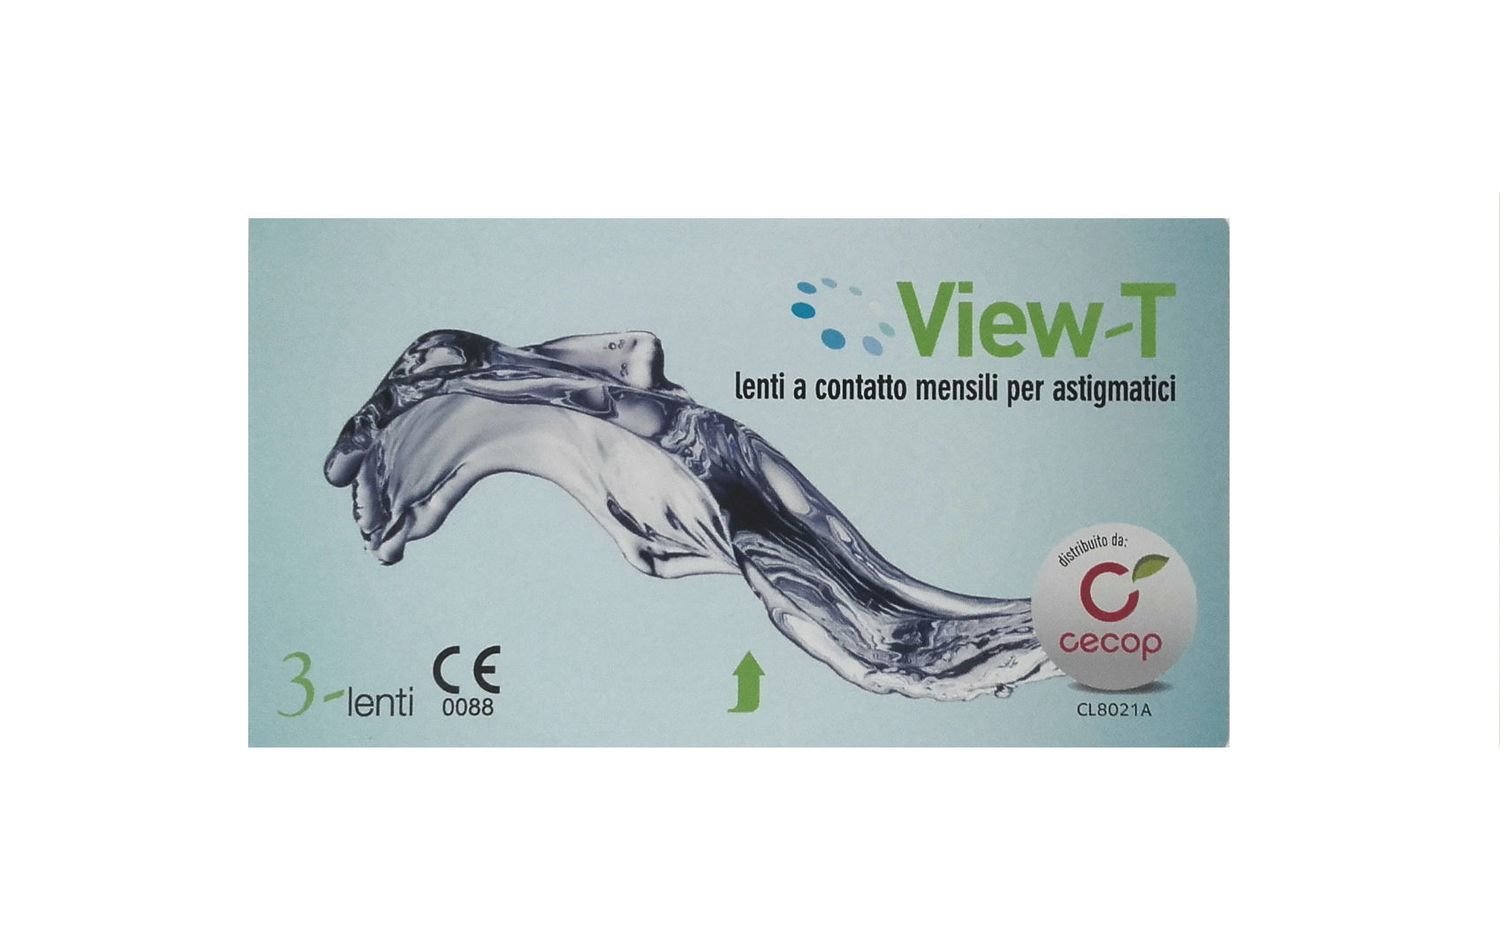 Lenti a contatto mensili per astigmatismo View-T 3 lenti